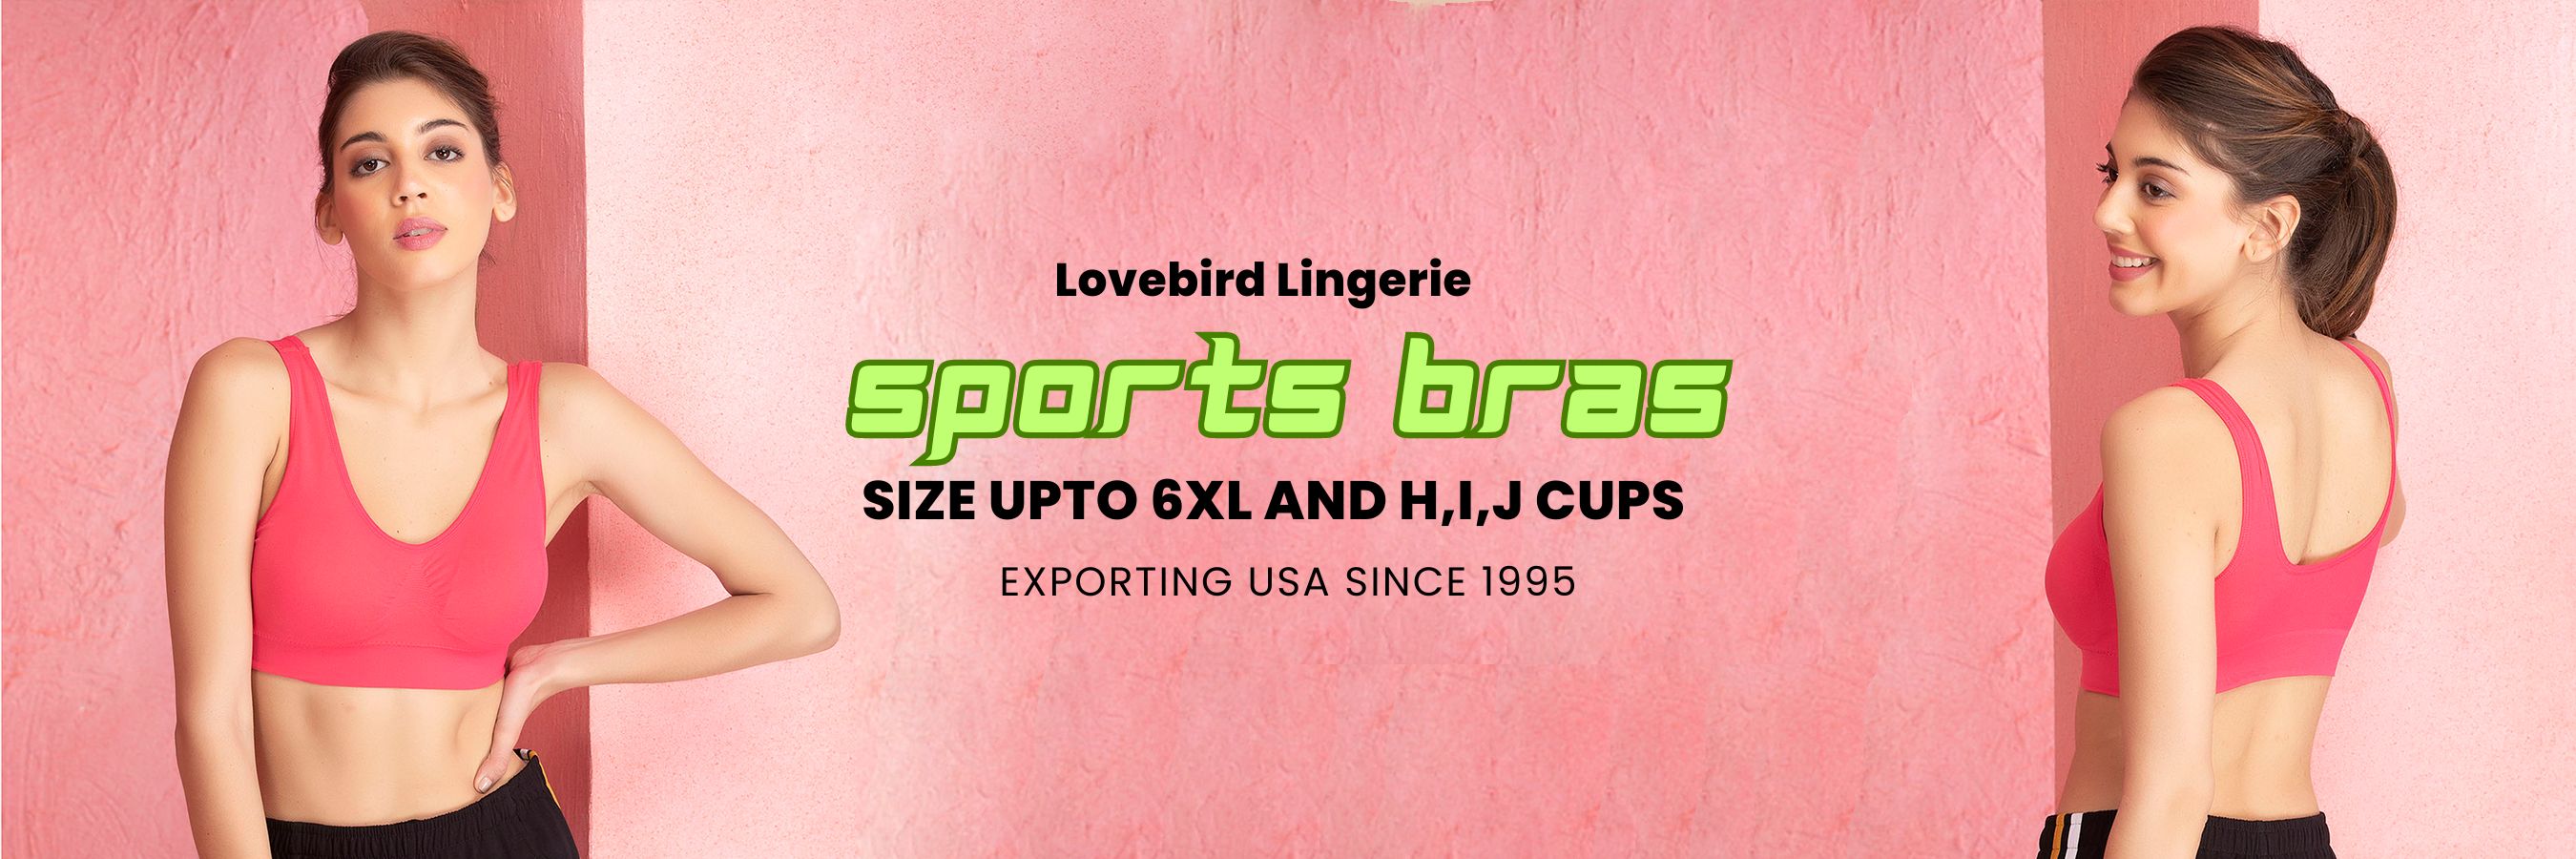 Women Sportswear Clothing Onli banner lovebird